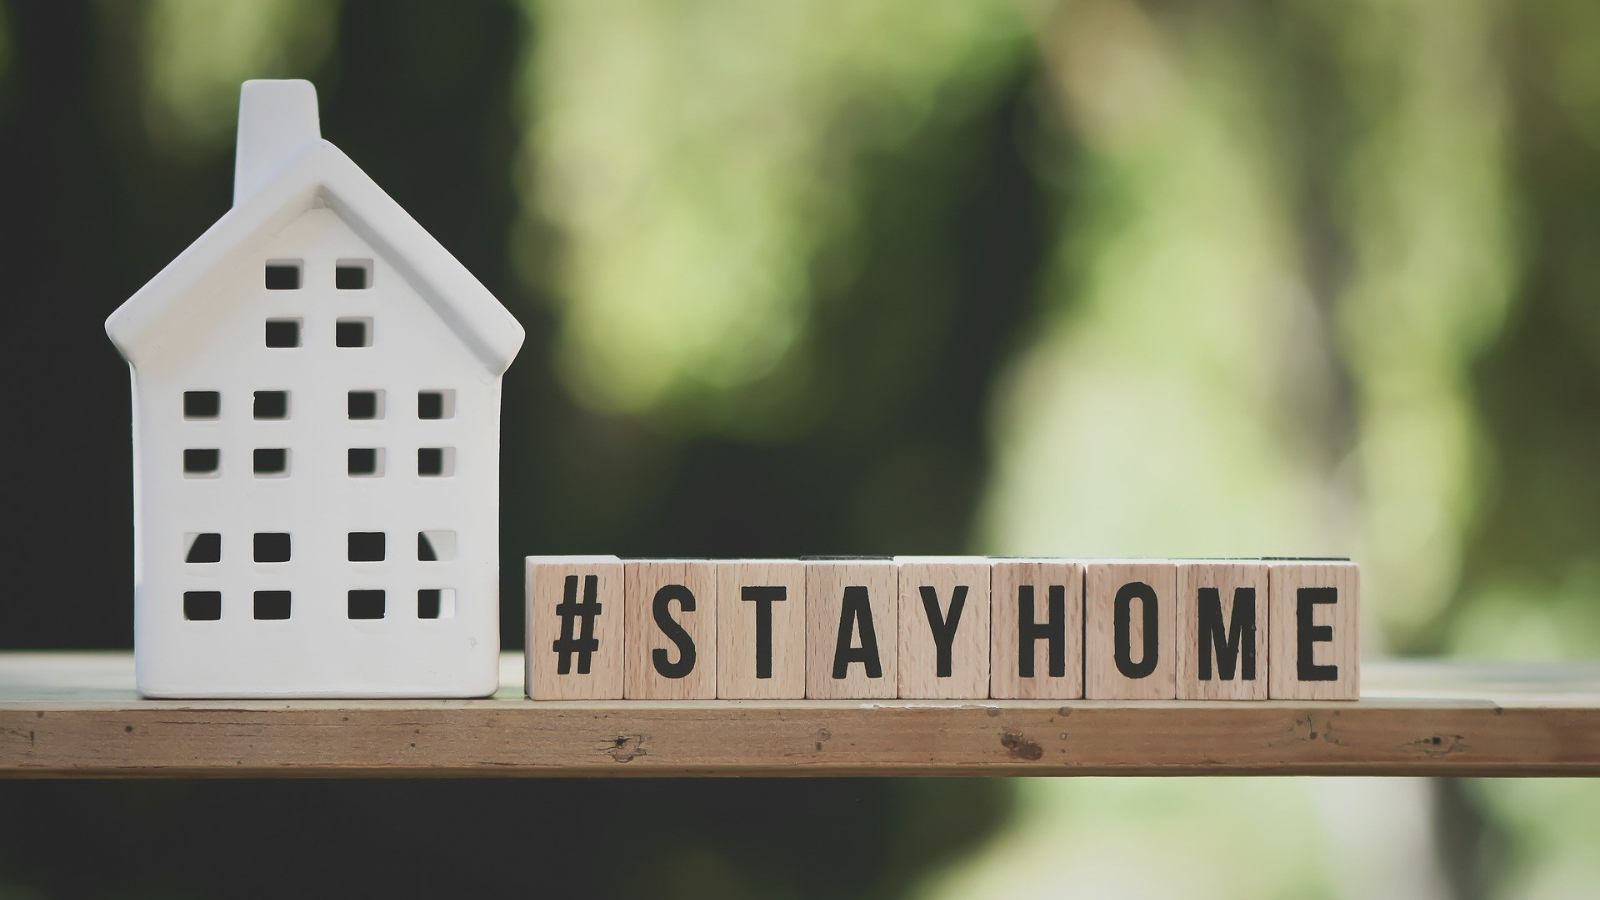 Symbolbild: auf einem Regalbrett steht vor einem grünlichen Hintergrund links ein stilisiertes Haus aus Ton oder Plastik und rechts ist mit beschrifteten Holzklötzen der Hashtag #STAYHOME abgebildet